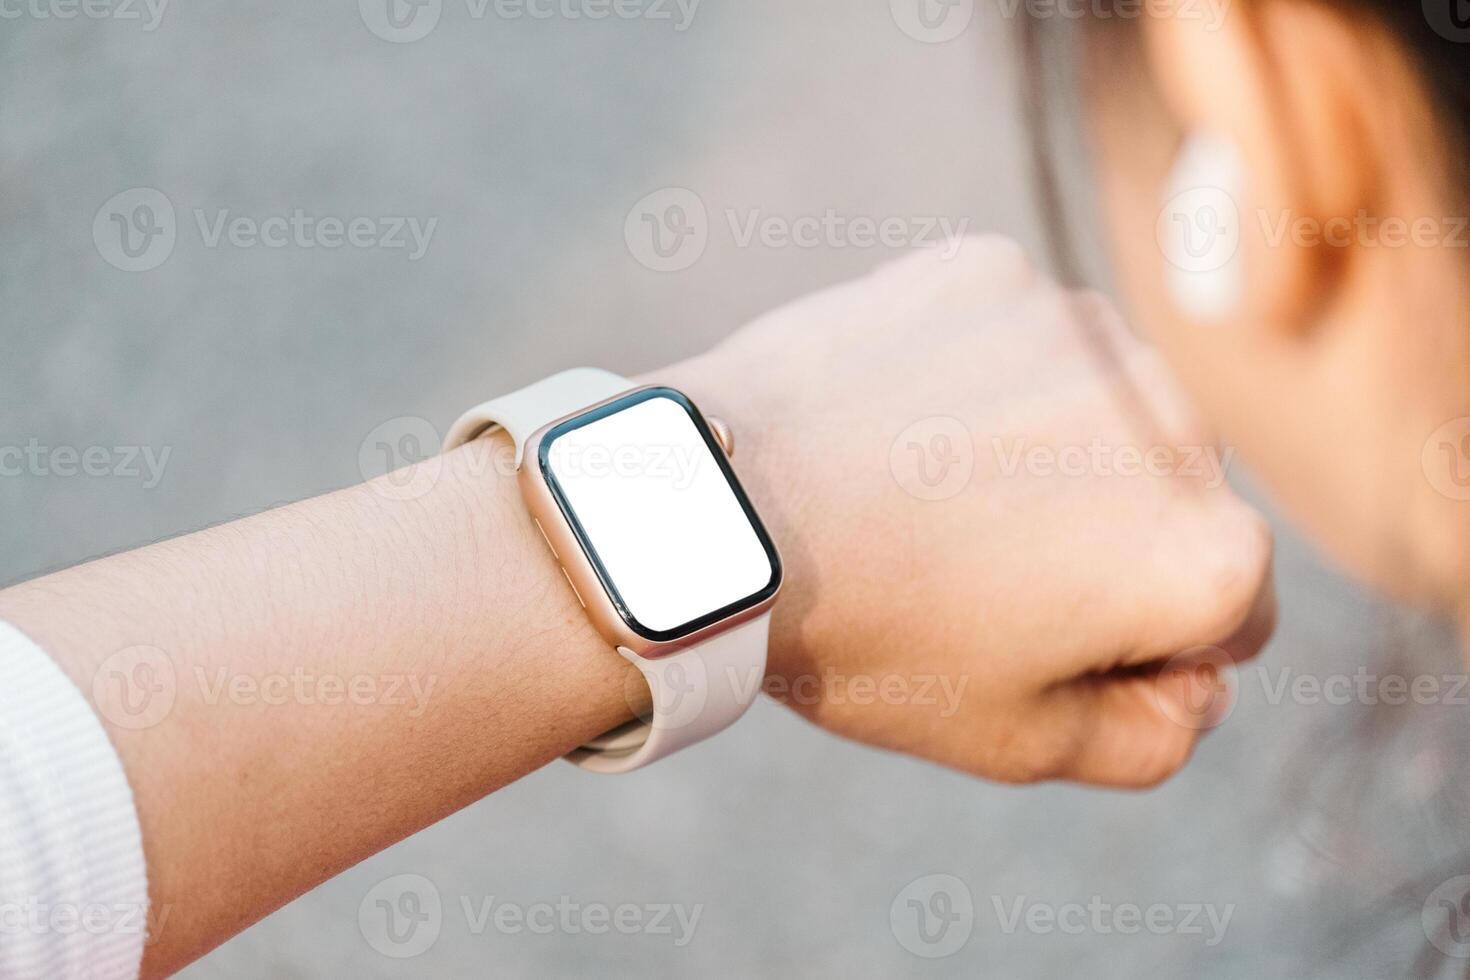 de cerca de un persona muñeca vistiendo un moderno reloj inteligente con un blanco pantalla, indicando conectividad y tecnología en todos los días vida. foto